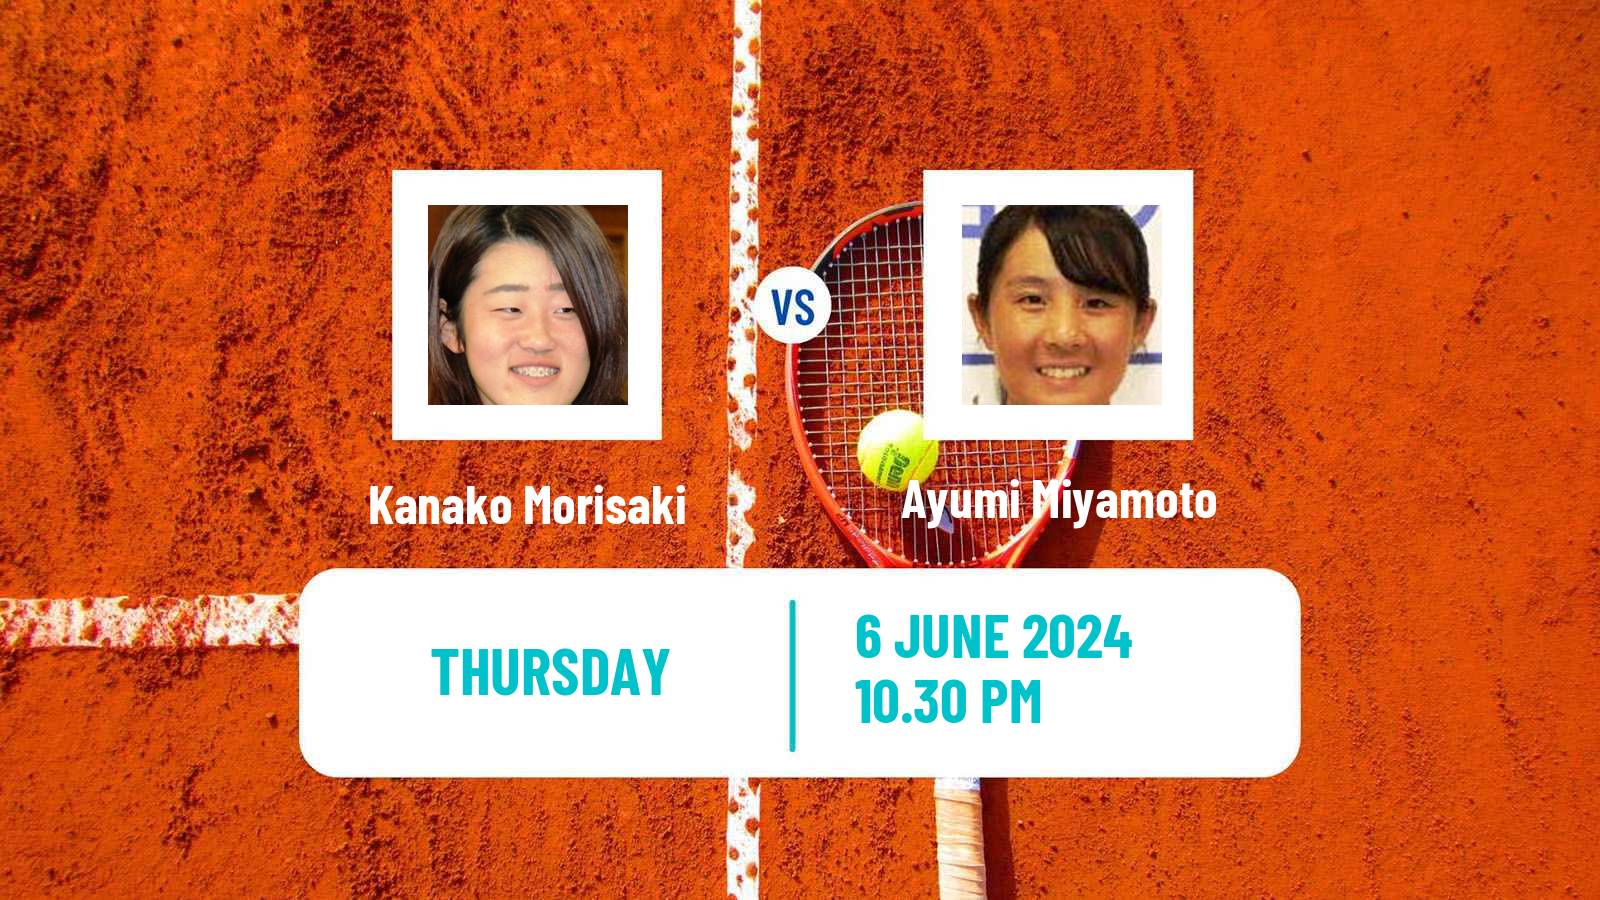 Tennis ITF W15 Kawaguchi Women Kanako Morisaki - Ayumi Miyamoto